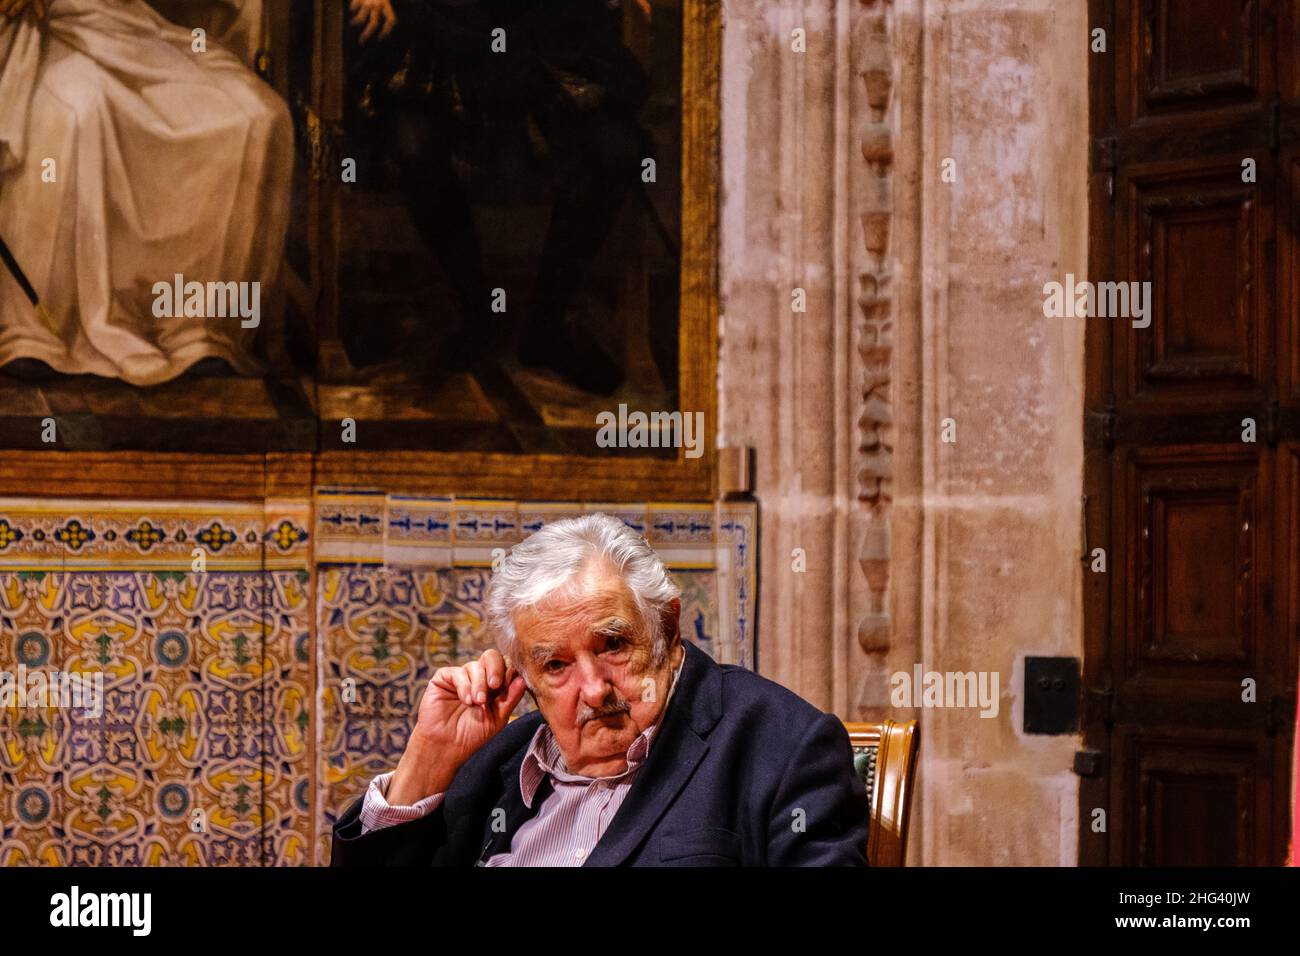 Valencia, Spanien; 4th. Februar 2020: Der ehemalige Präsident von Uruguay, José Mujica, wird während seines Besuchs in den Palau de la Generalitat Valenciana eingeladen Stockfoto